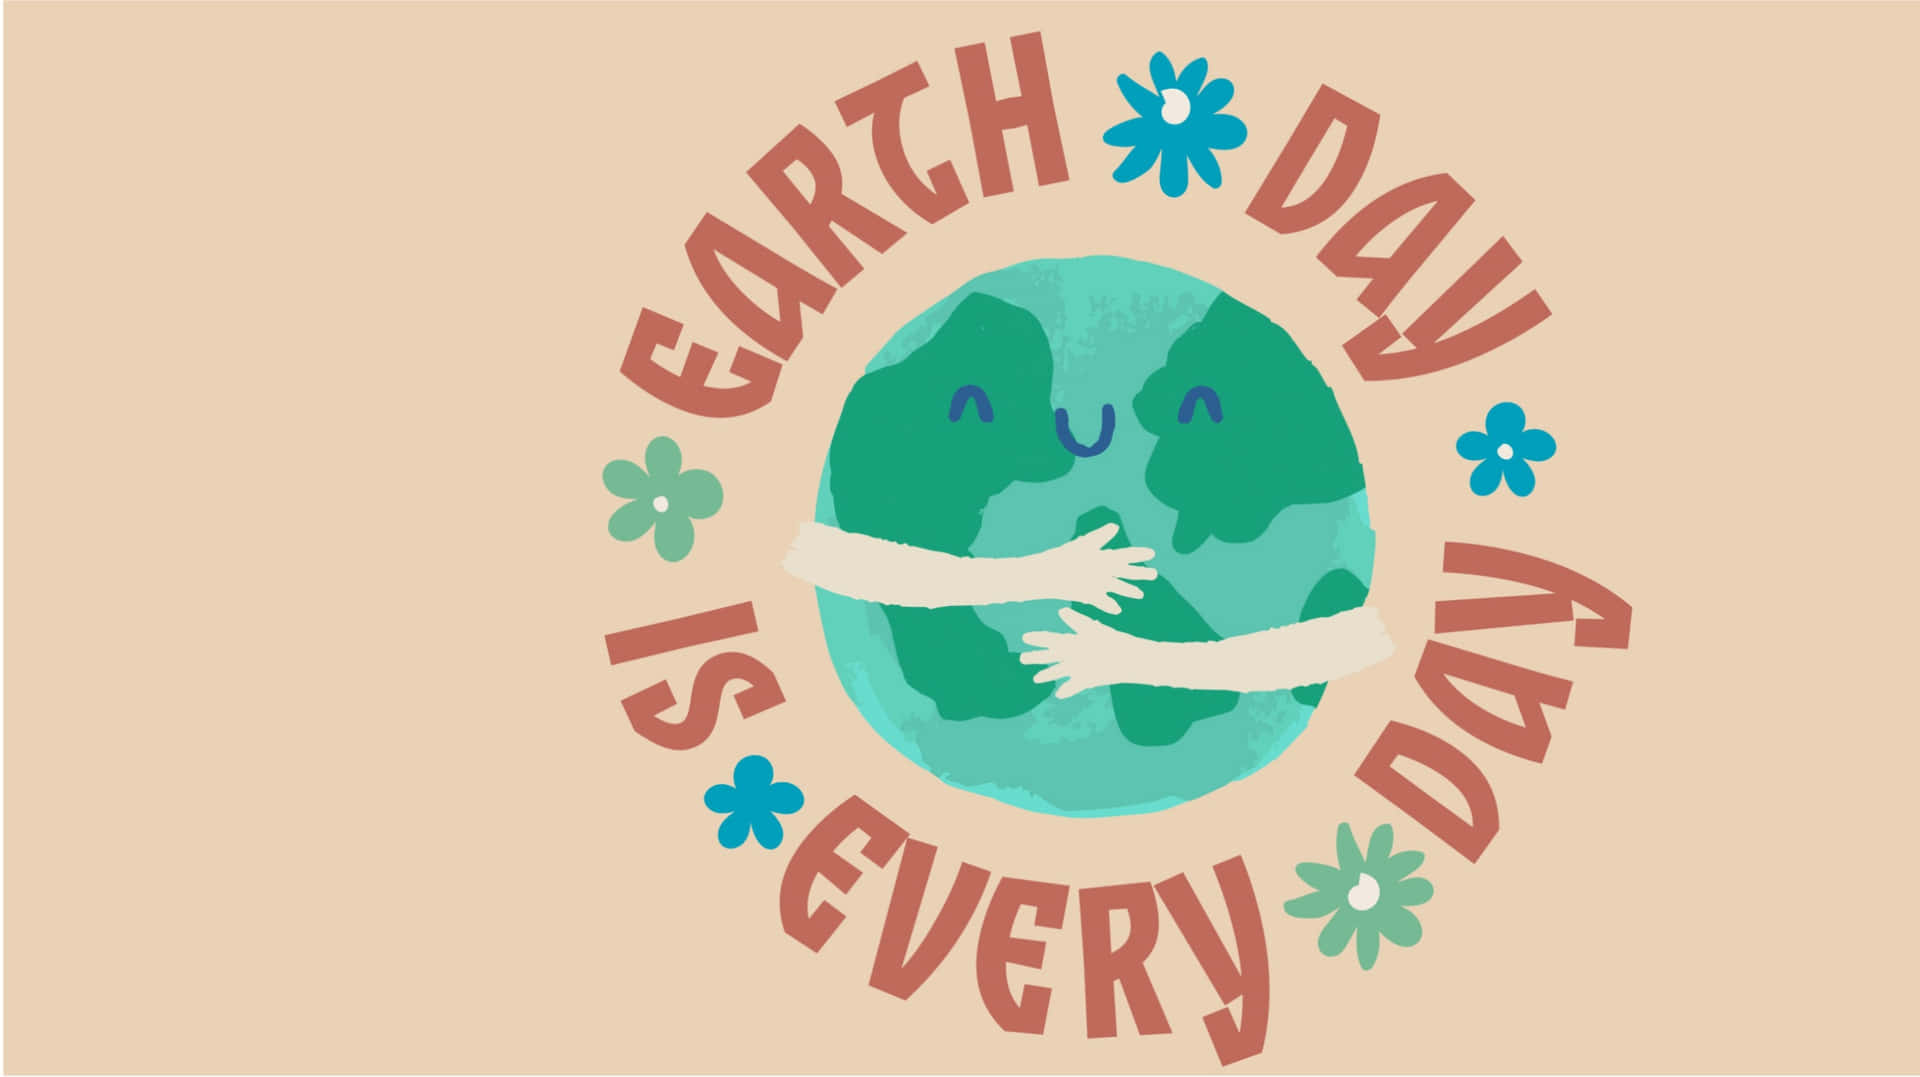 Celebrael Día De La Tierra Y Protege Nuestro Planeta.